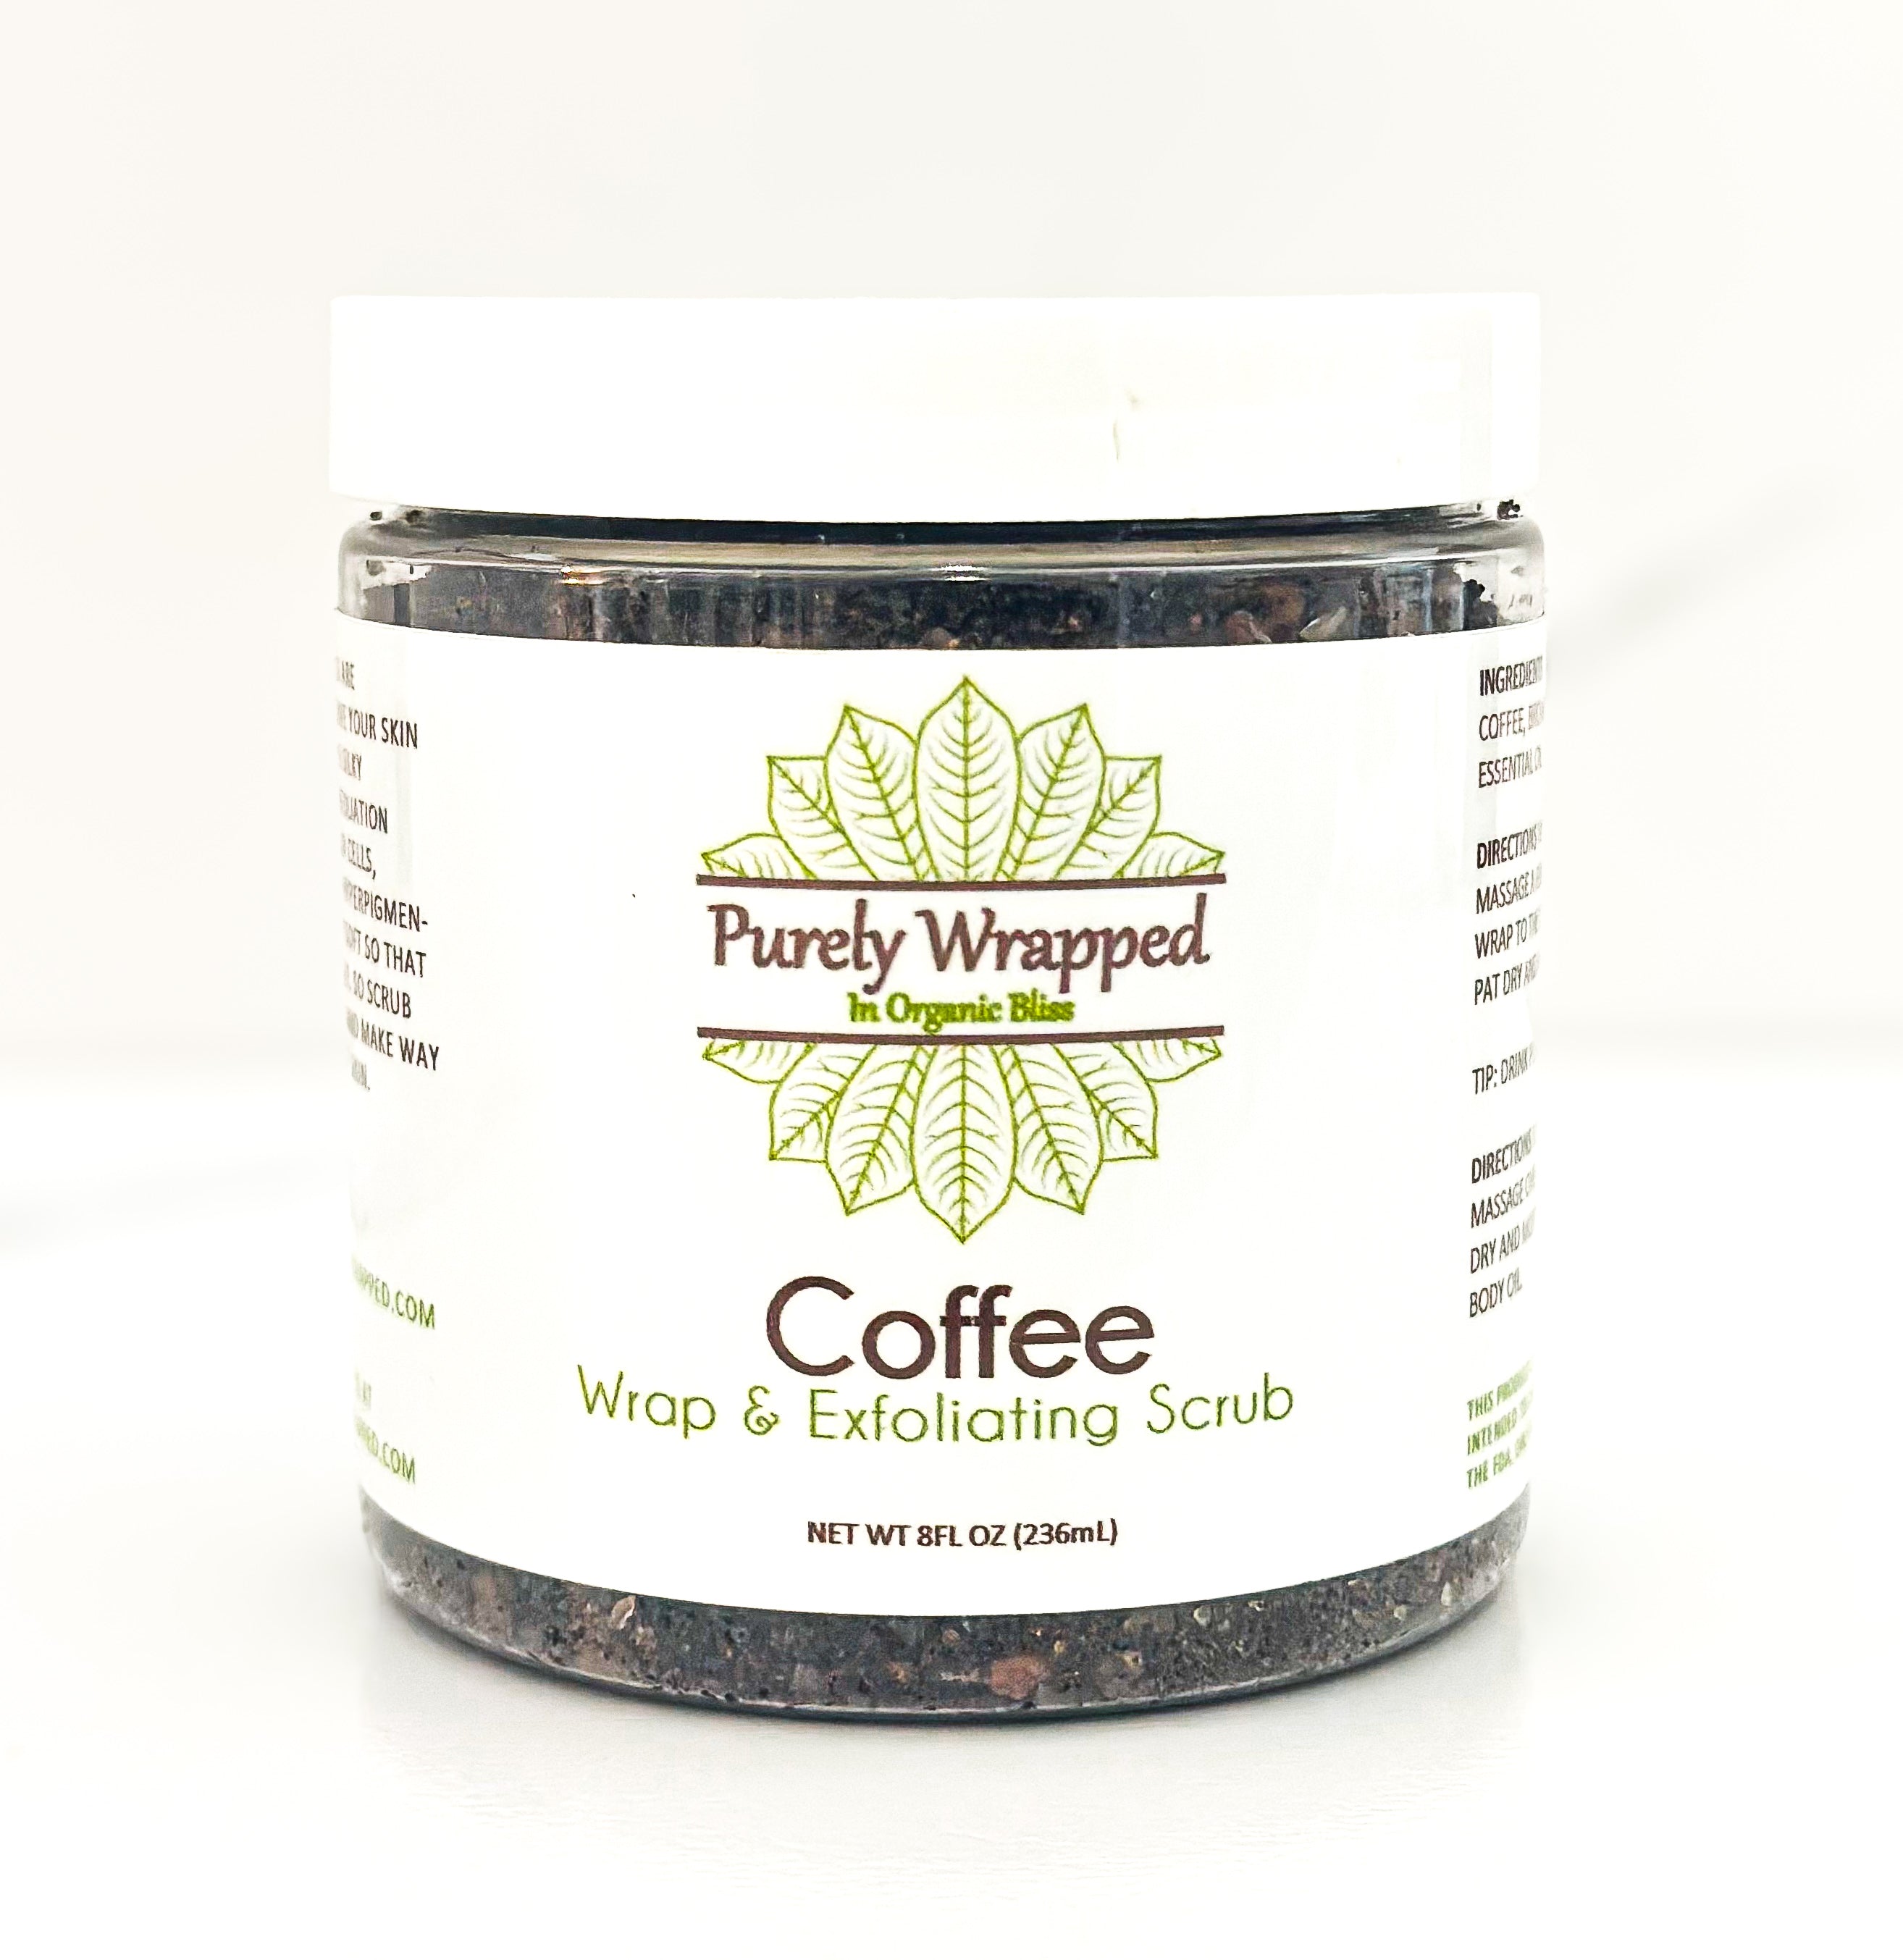 Coffee Body Wrap & Exfoliating Scrub